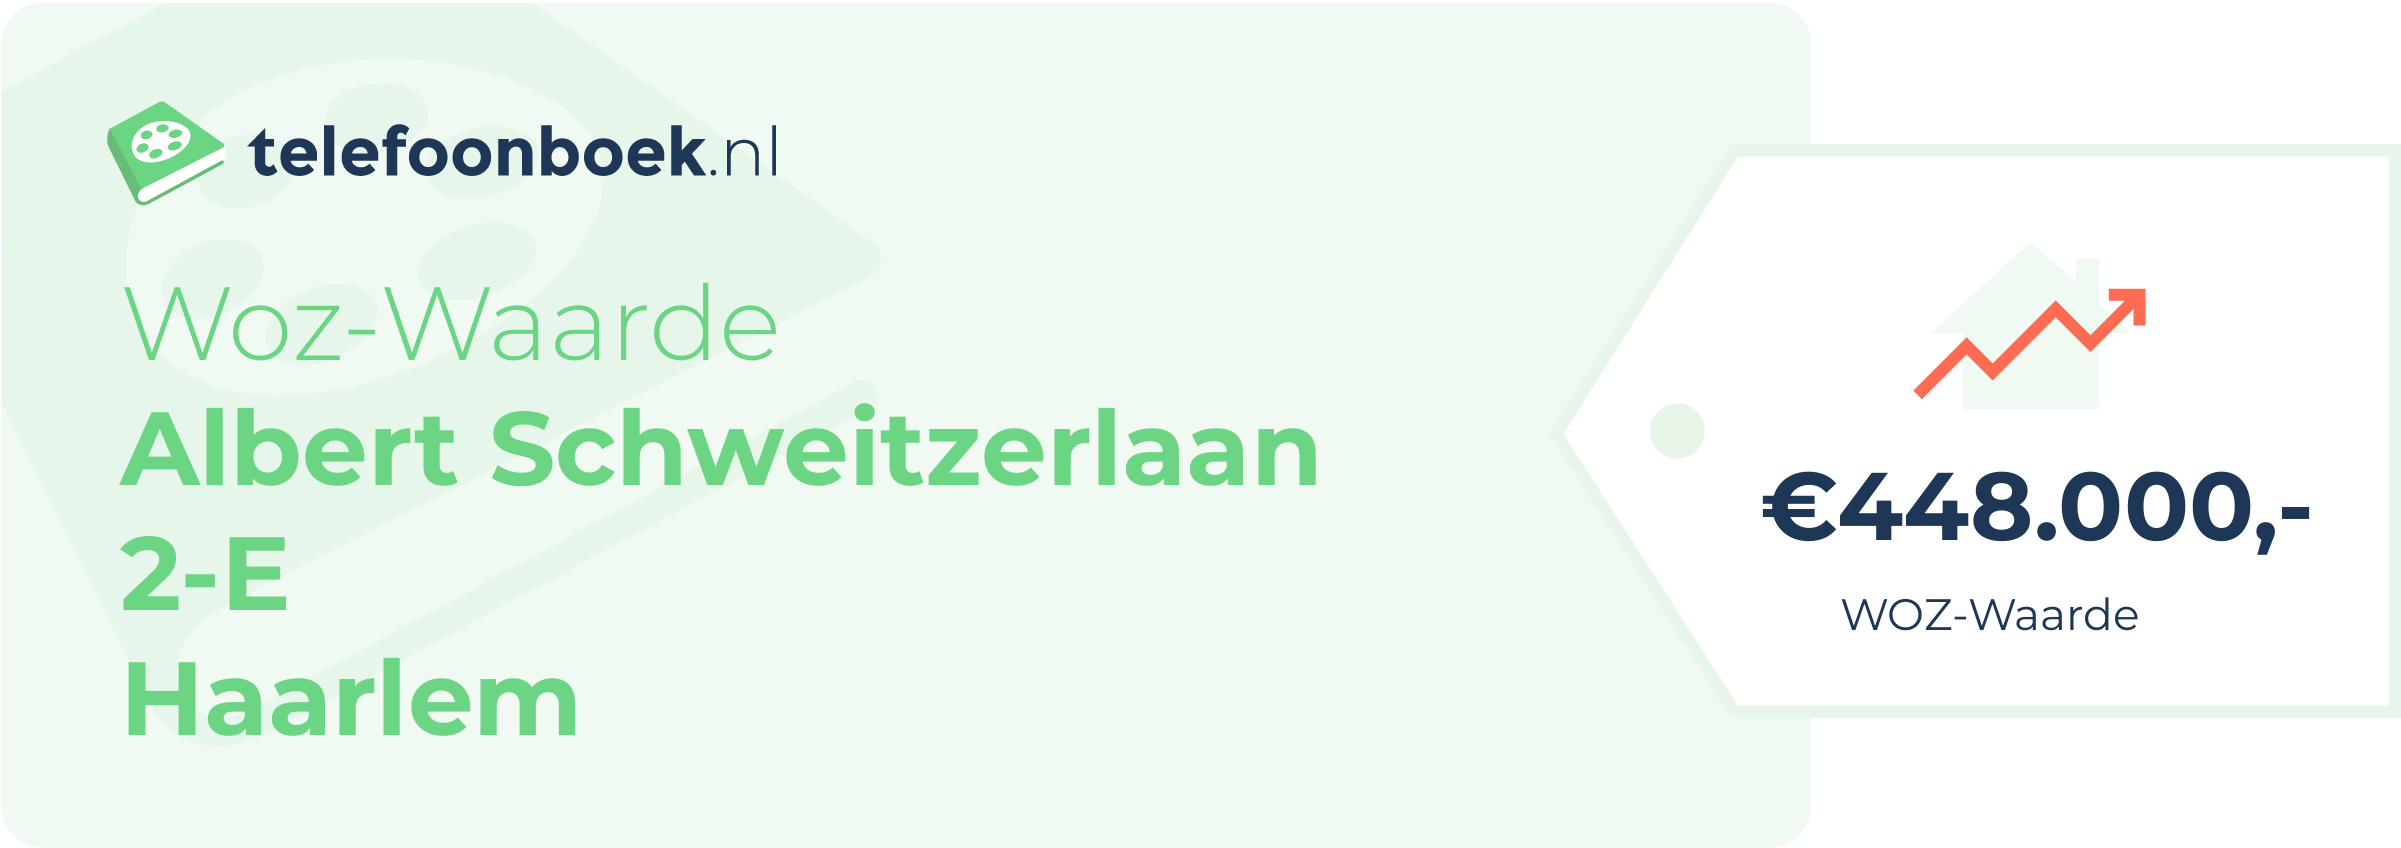 WOZ-waarde Albert Schweitzerlaan 2-E Haarlem